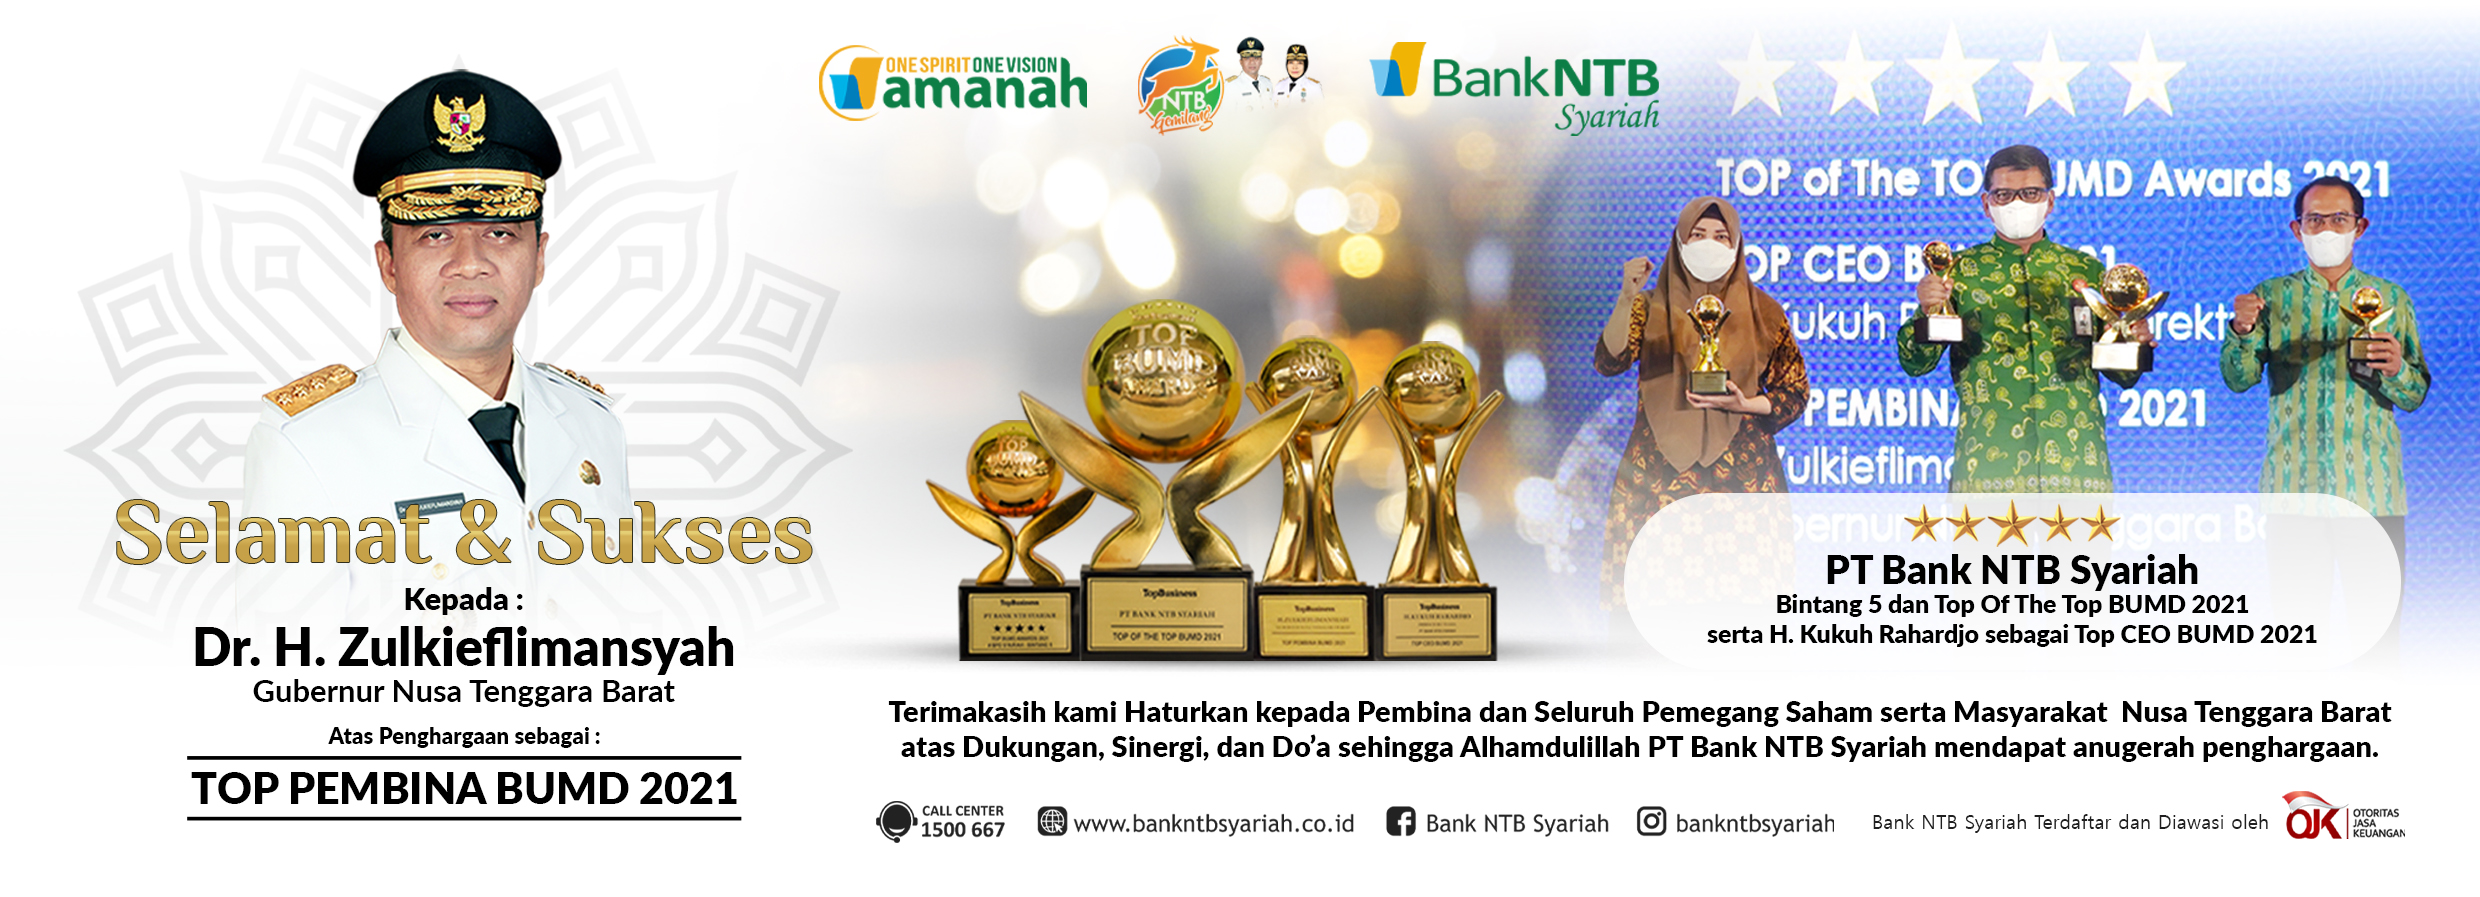 Bank-NTB-Syariah-raih-Anugrah-Penghargaan-Top-BUMD-Awards-2021.html